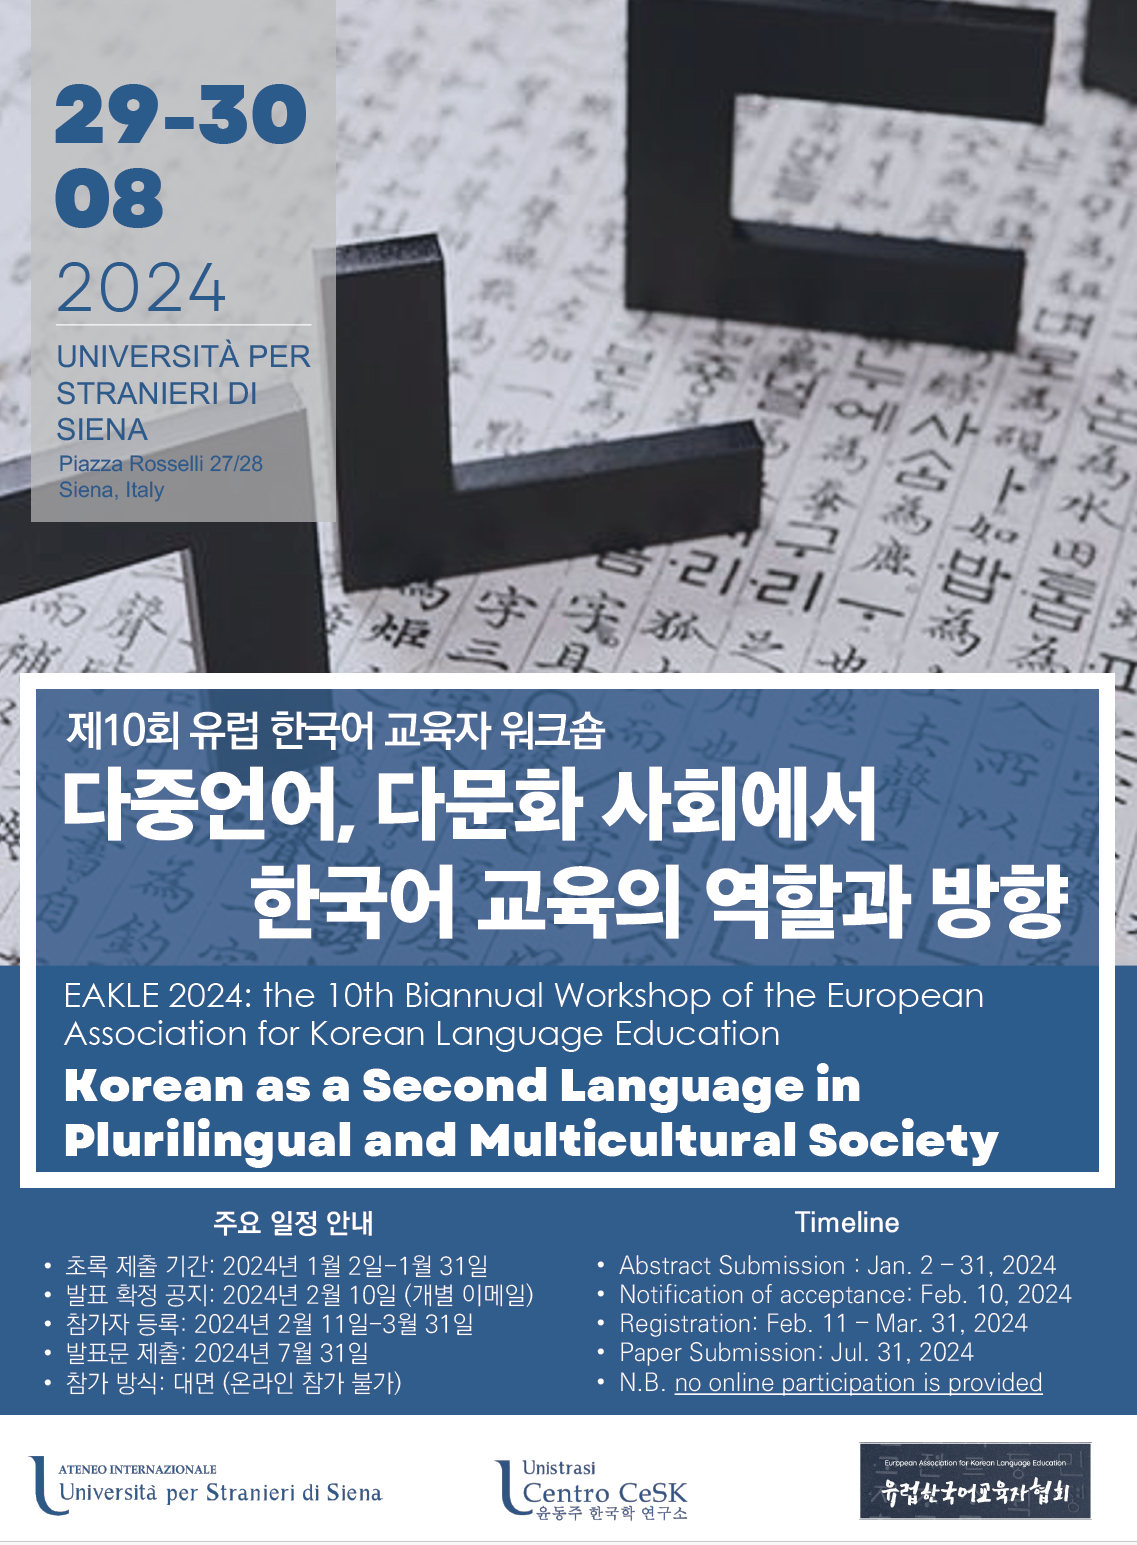 10° Convegno Internazionale di Studi Coreani EAKLE 2024 - invio abstract entro il 31 gennaio 2024